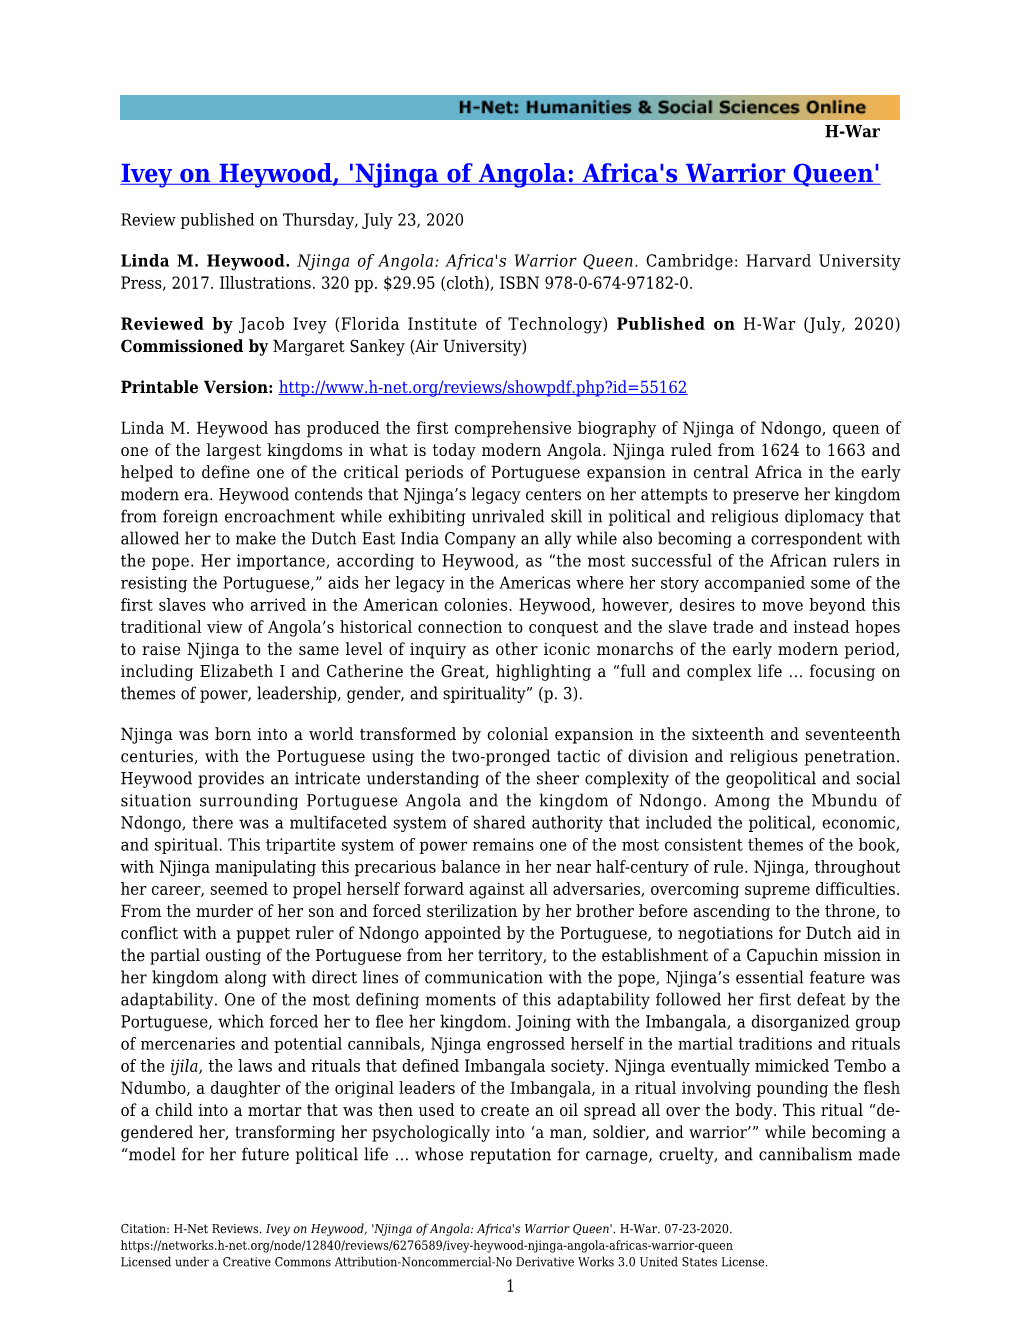 'Njinga of Angola: Africa's Warrior Queen'